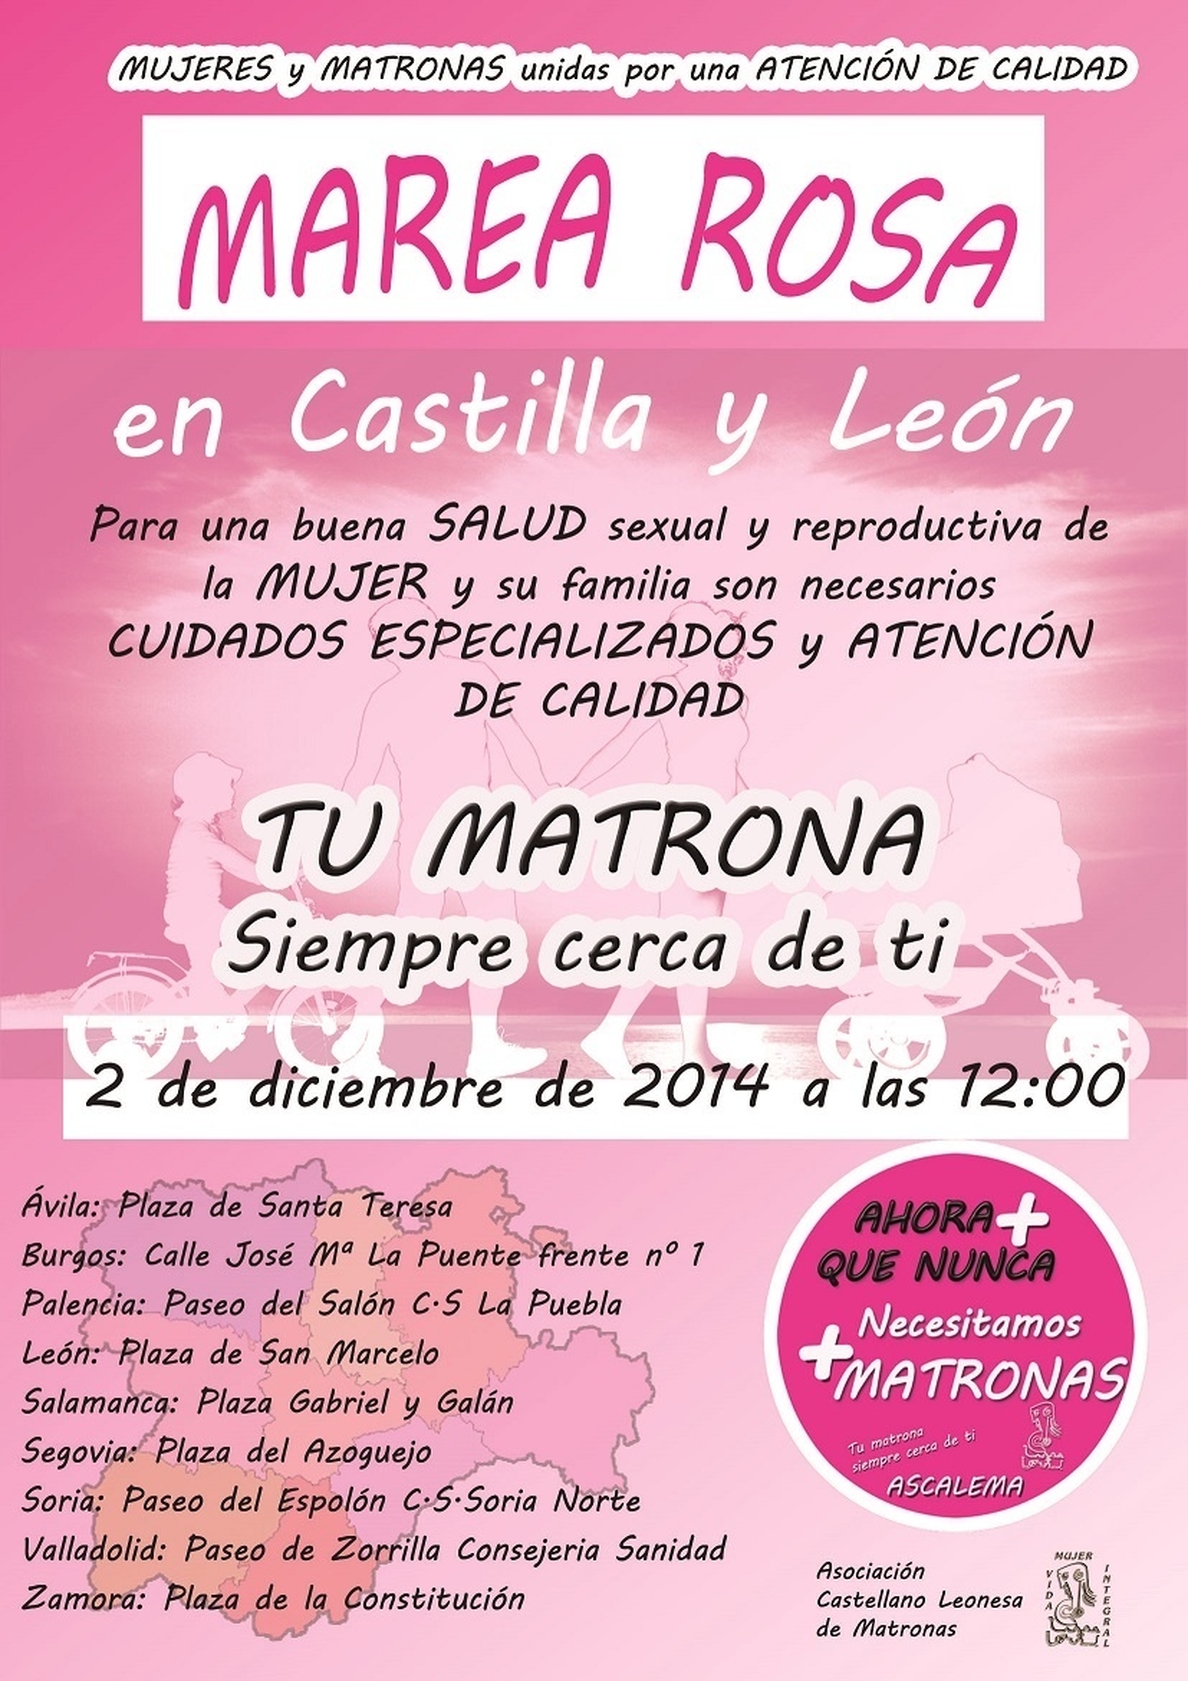 Las matronas teñirán de rosa el próximo martes Castilla y León para dar visibilidad a su profesión